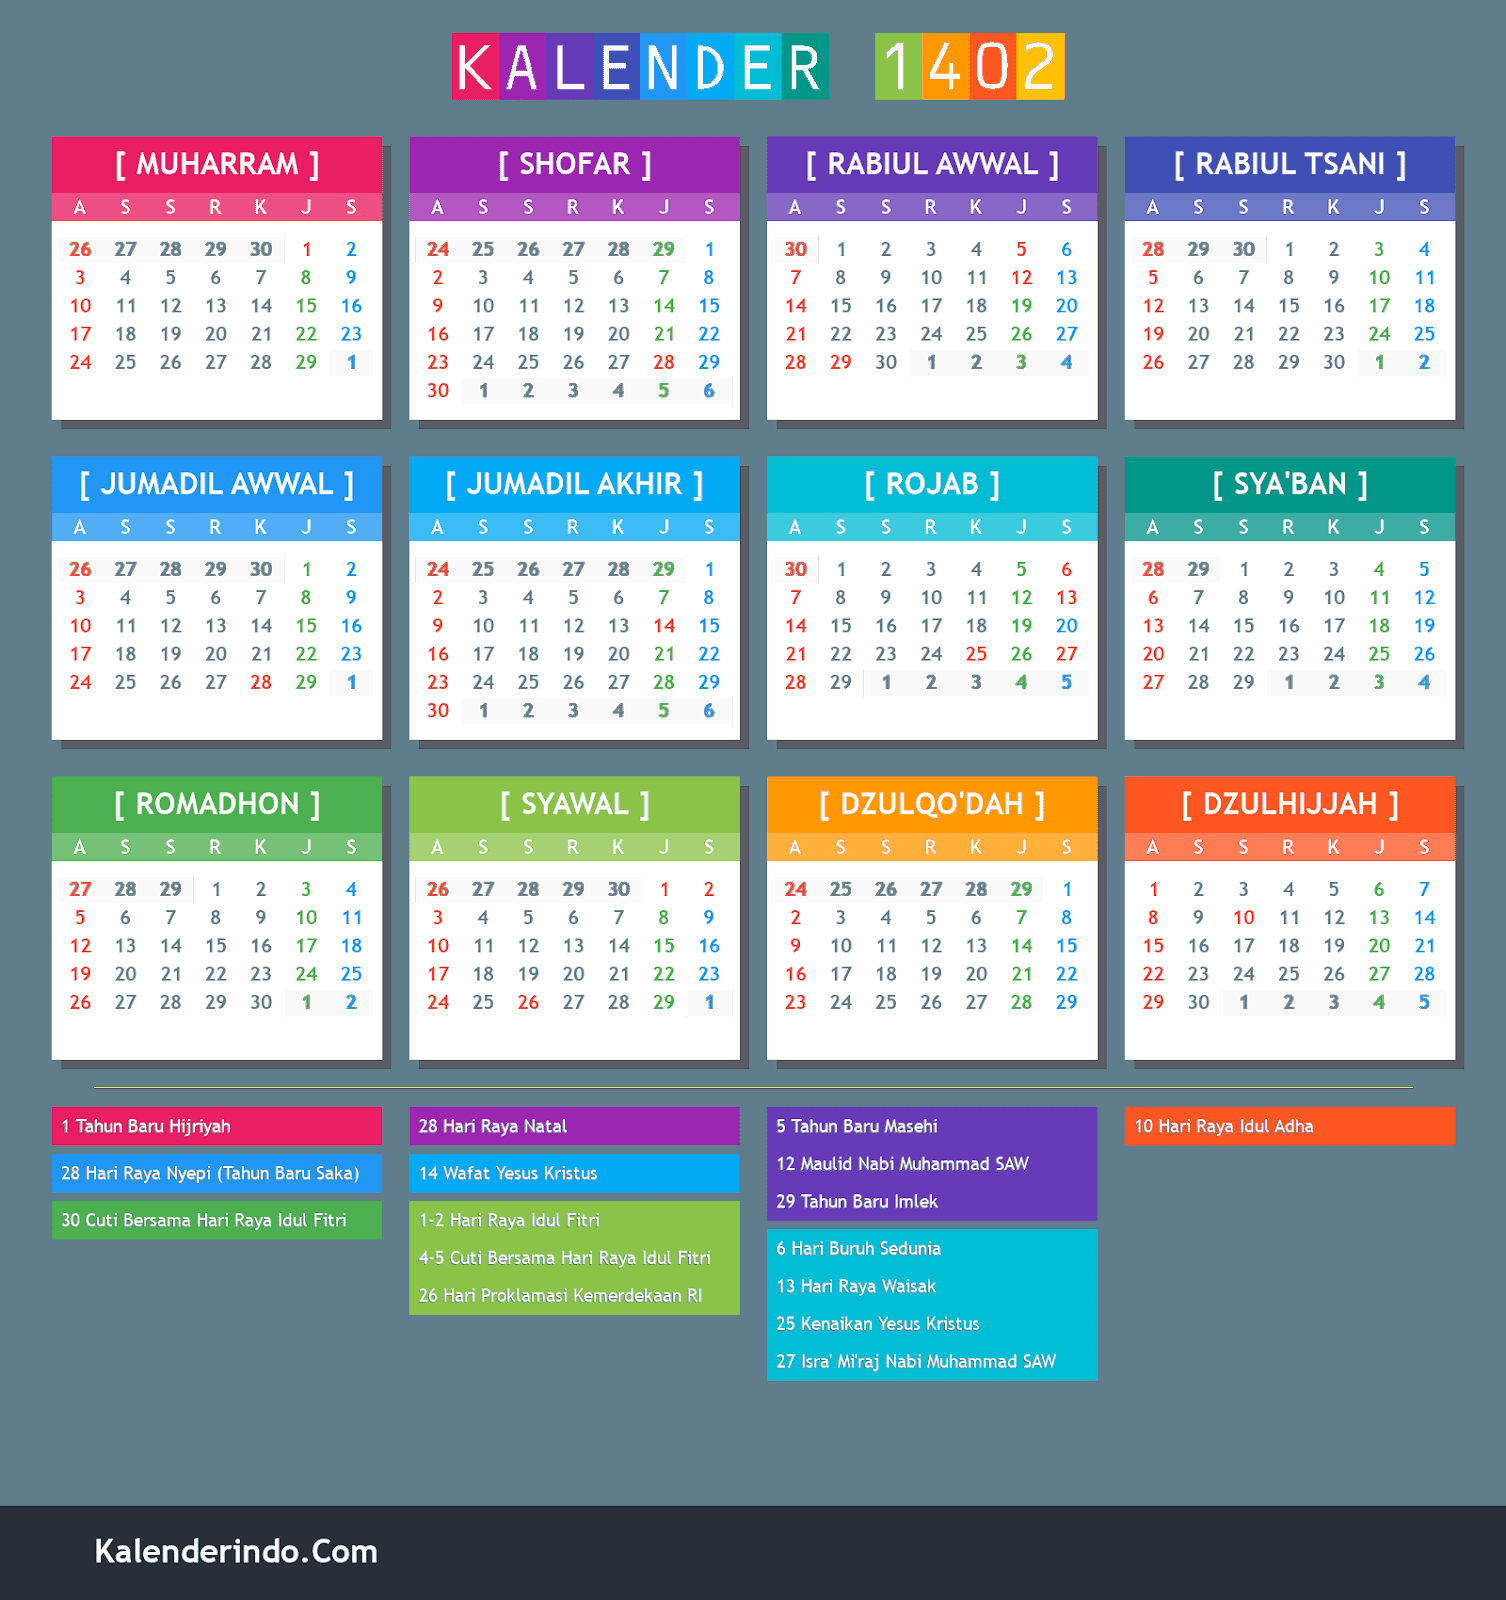 Kalender Hijriyah Online: 1402